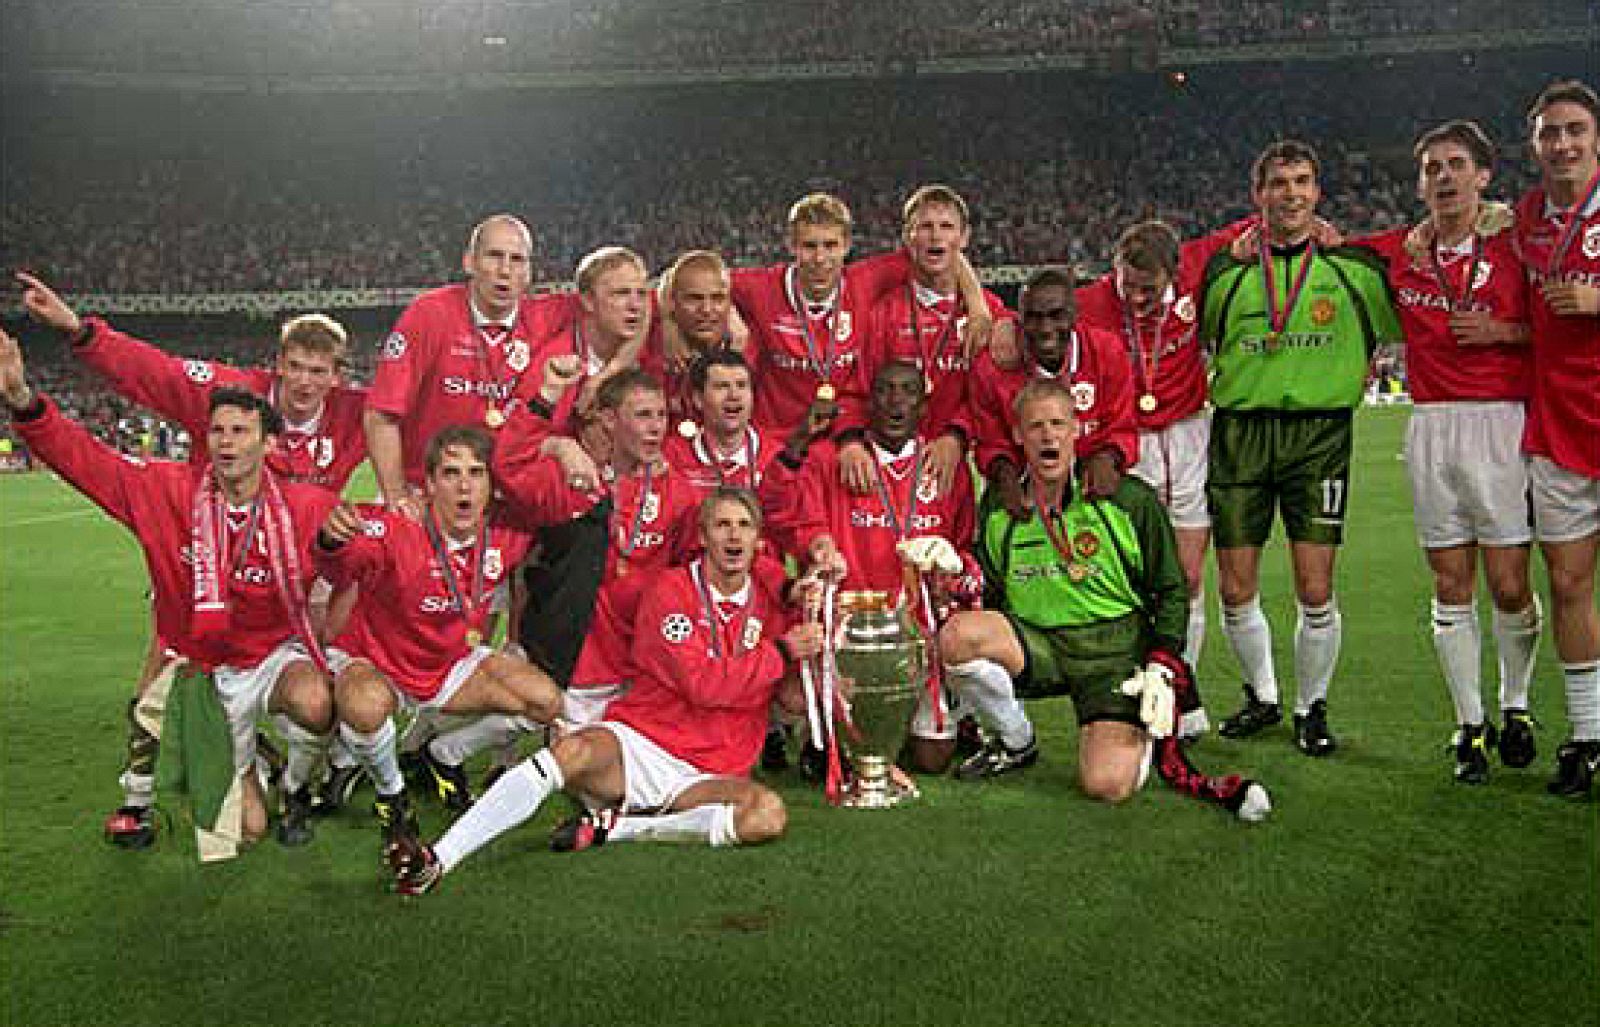 El Camp Nou vivió en el año 99 la que tal vez fue la final de Champions más loca de la historia. Cuando en el minuto 90 el Bayer de Munich ganaba 1-0 nadie esperaba que ese partido acabaría cayendo del lado de los ingleses. En tres minutos el Manche